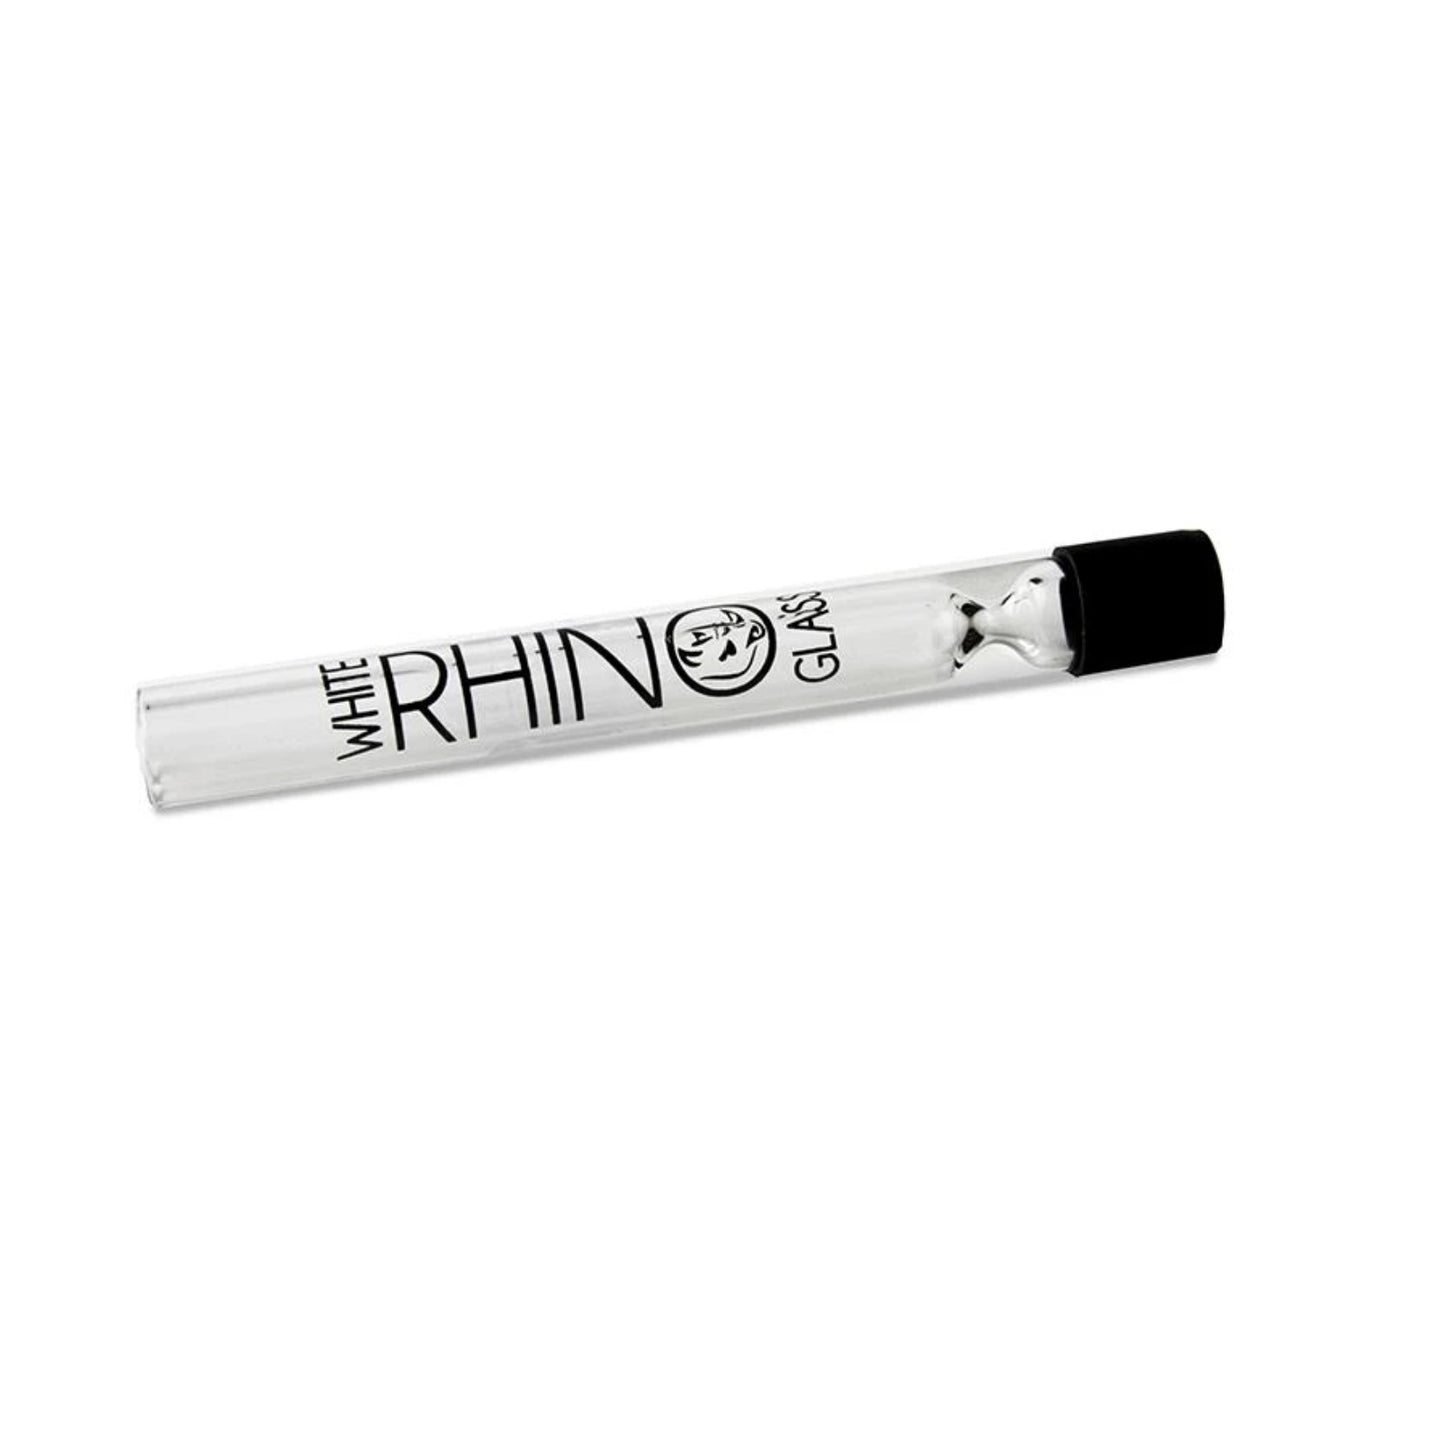 White Rhino Glass Chillum - 100ct Display